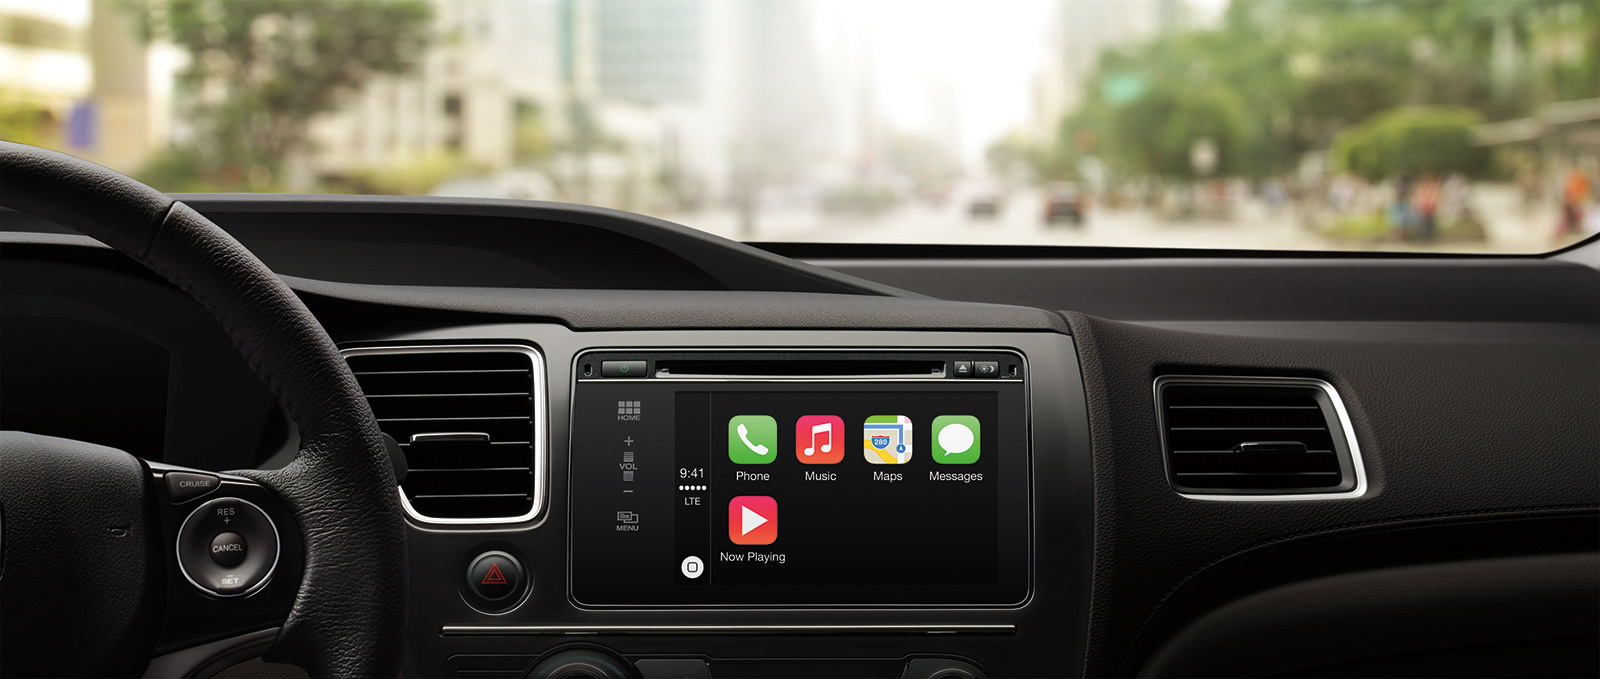 Une étude met en garde contre l'utilisation d'Apple CarPlay et